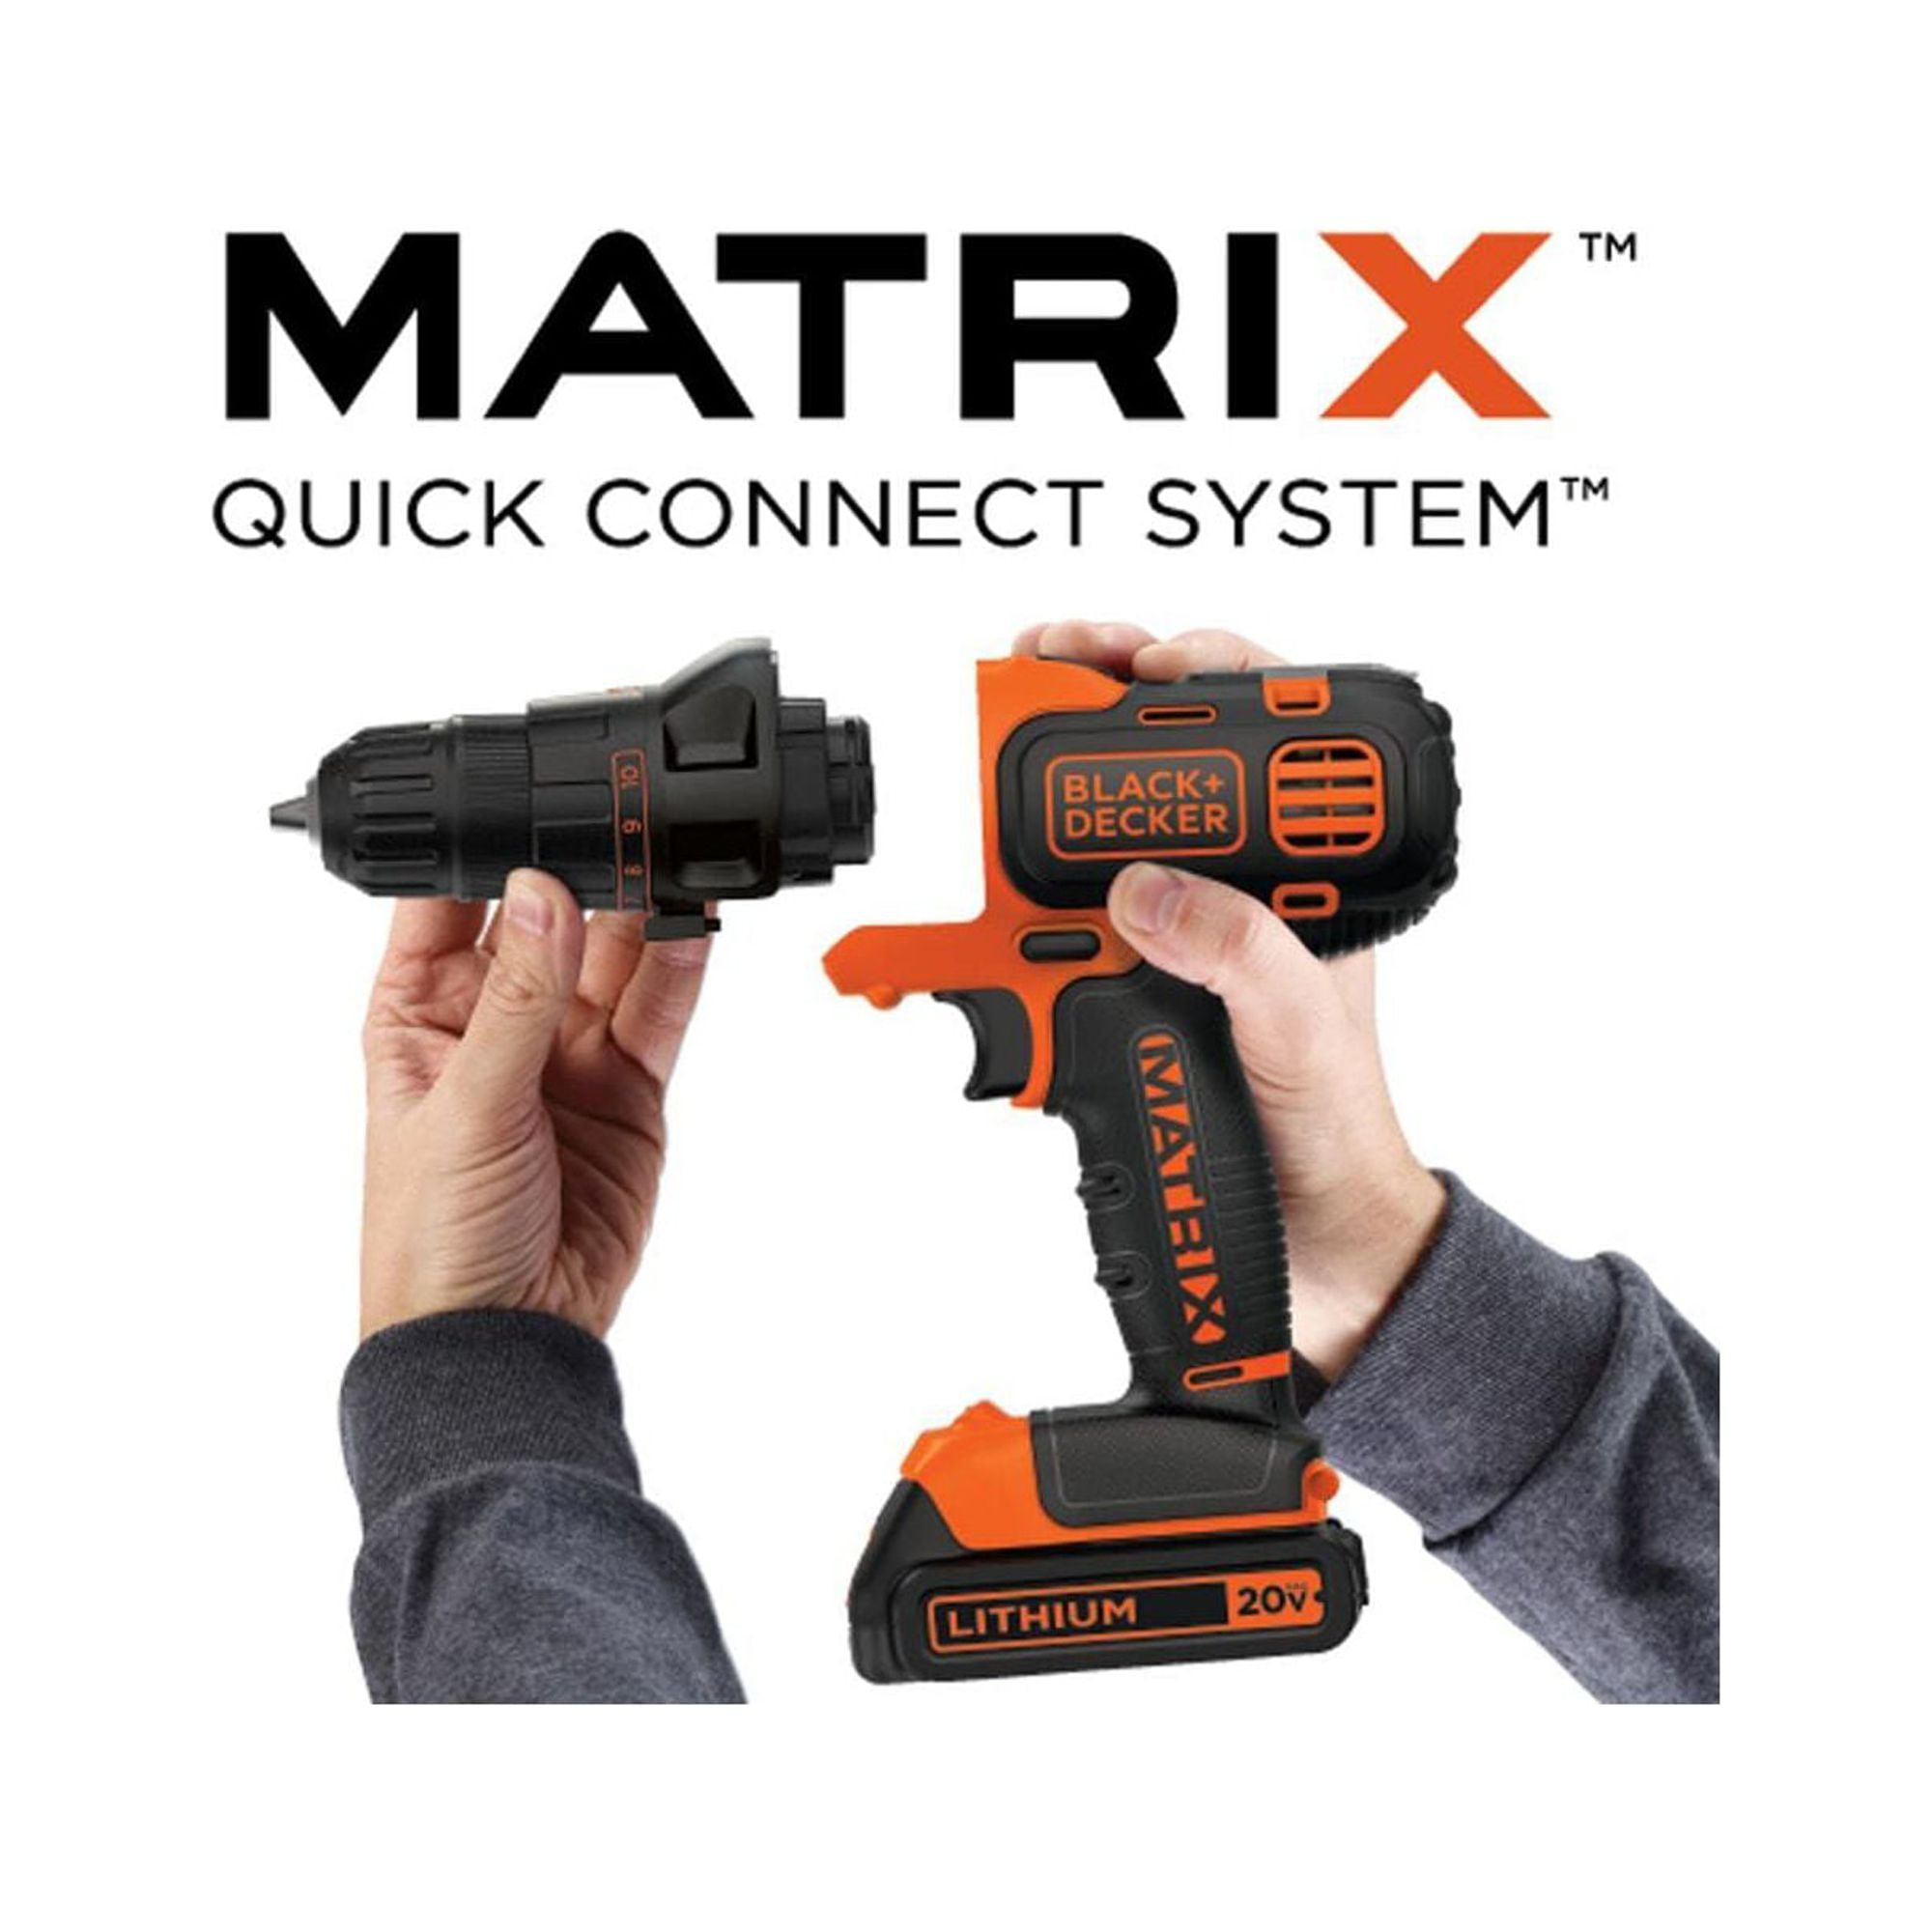  BLACK+DECKER 20V MAX Matrix Cordless Drill/Driver (BDCDMT120C)  & Matrix Jig Saw Attachment For Cordless Drill (BDCMTJS) : Tools & Home  Improvement